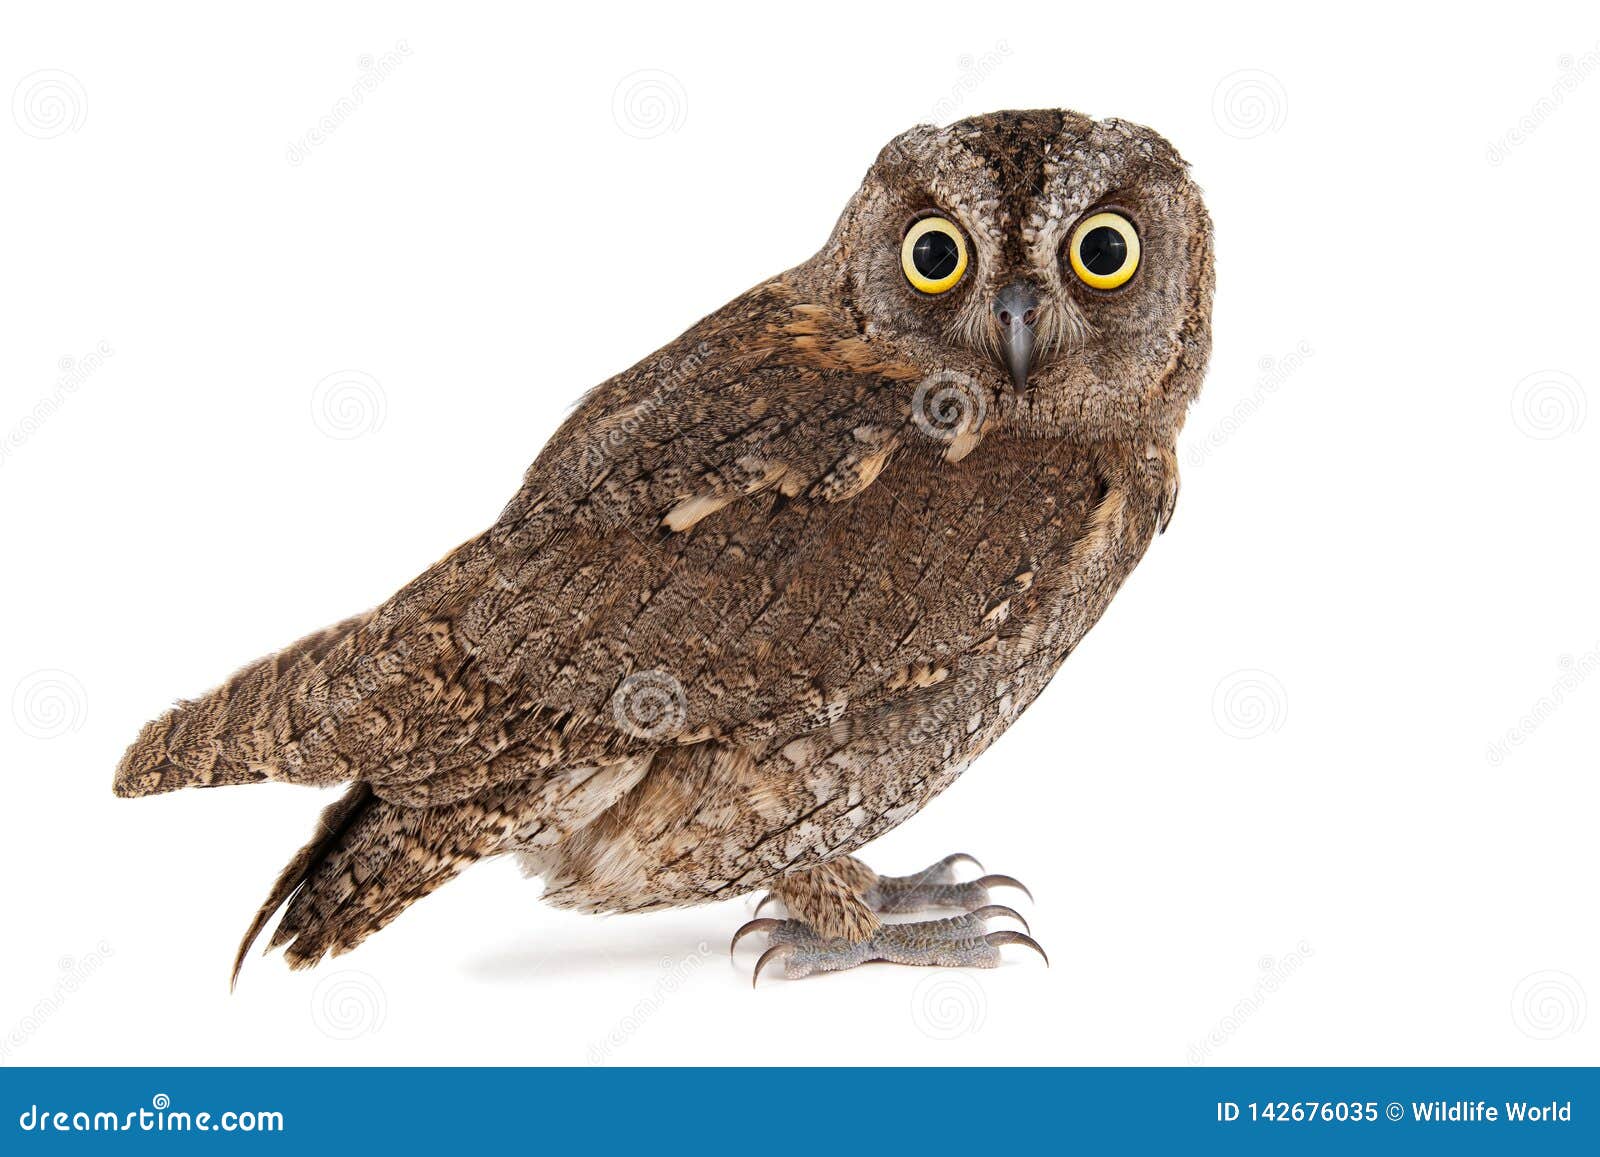 owls - european scops owl, otus scops,  on white background